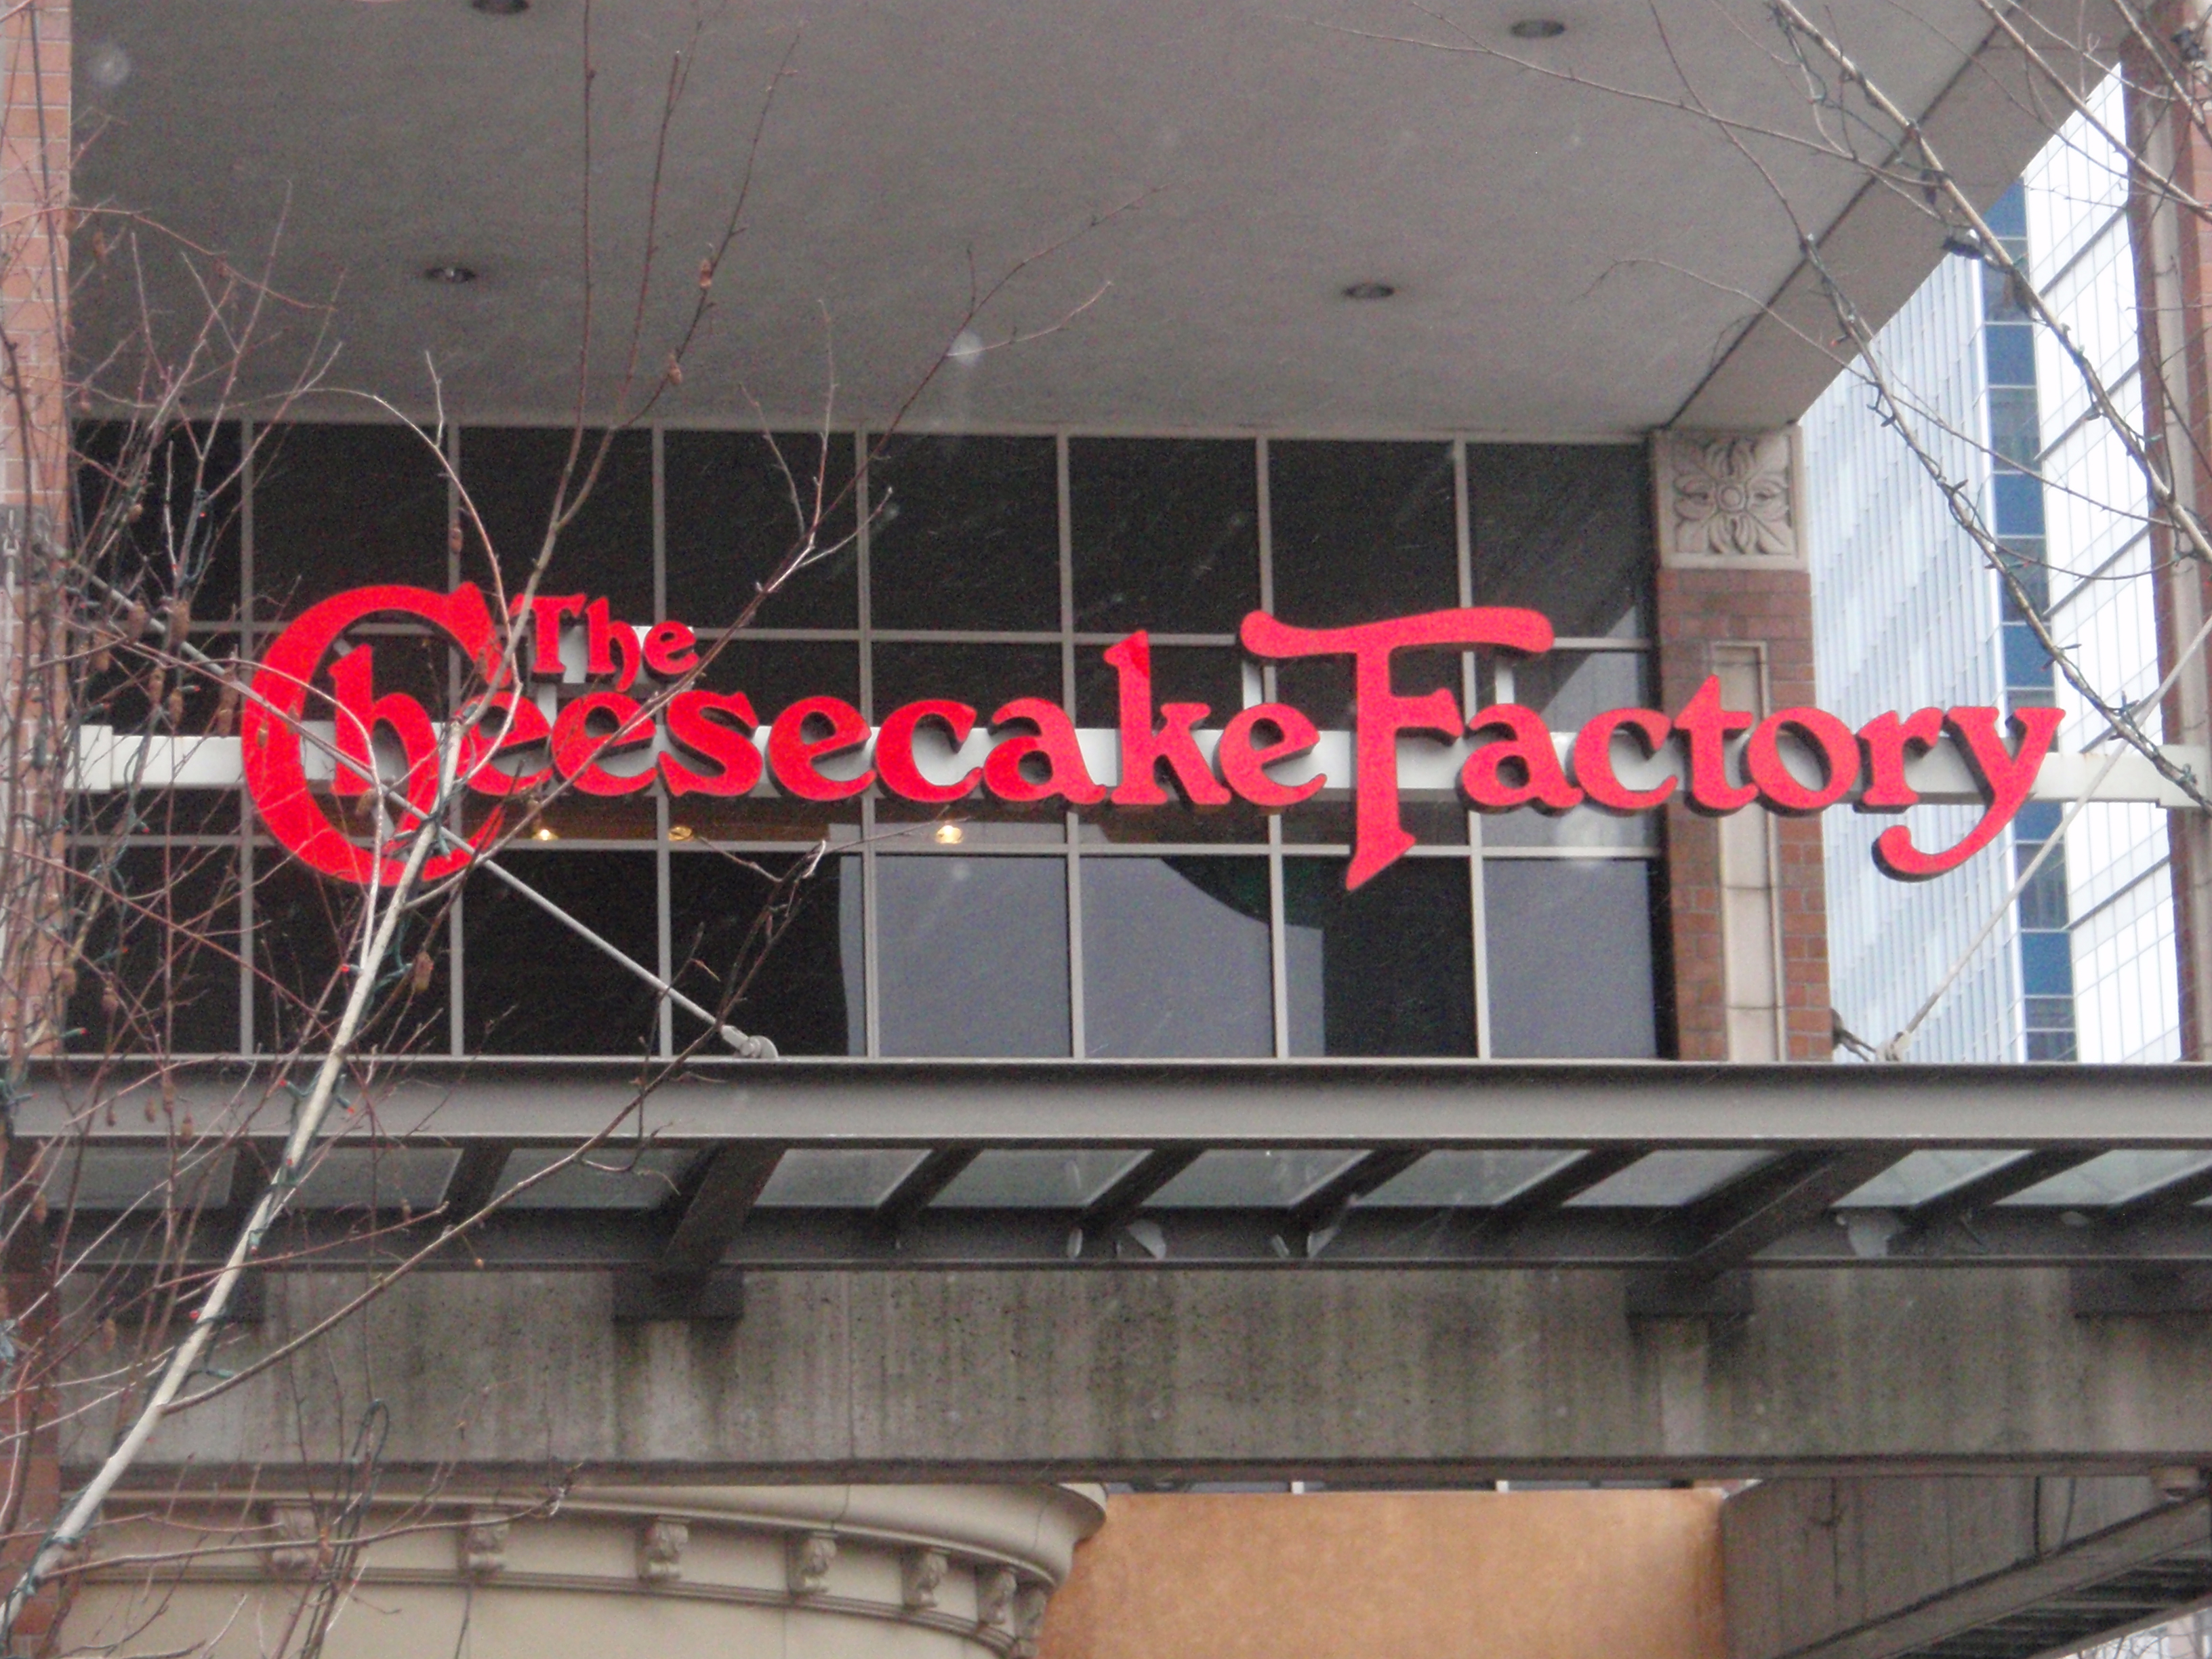 Una fotografía muestra un letrero grande de Cheesecake Factory colgando sobre la entrada de un edificio.